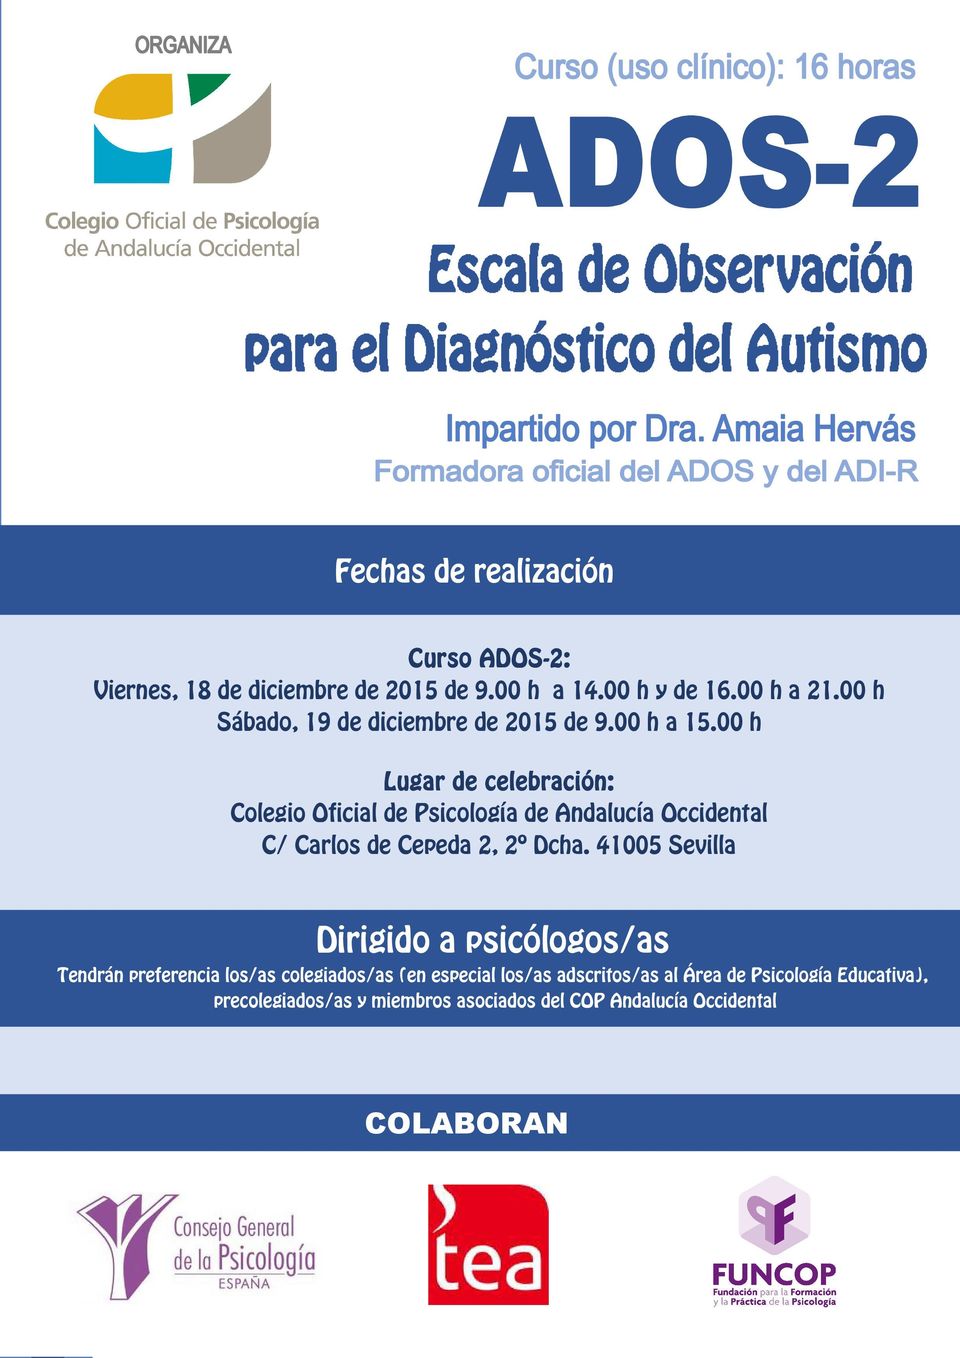 00 h Lugar de celebración: Colegio Oficial de Psicología de Andalucía Occidental C/ Carlos de Cepeda 2, 2º Dcha.